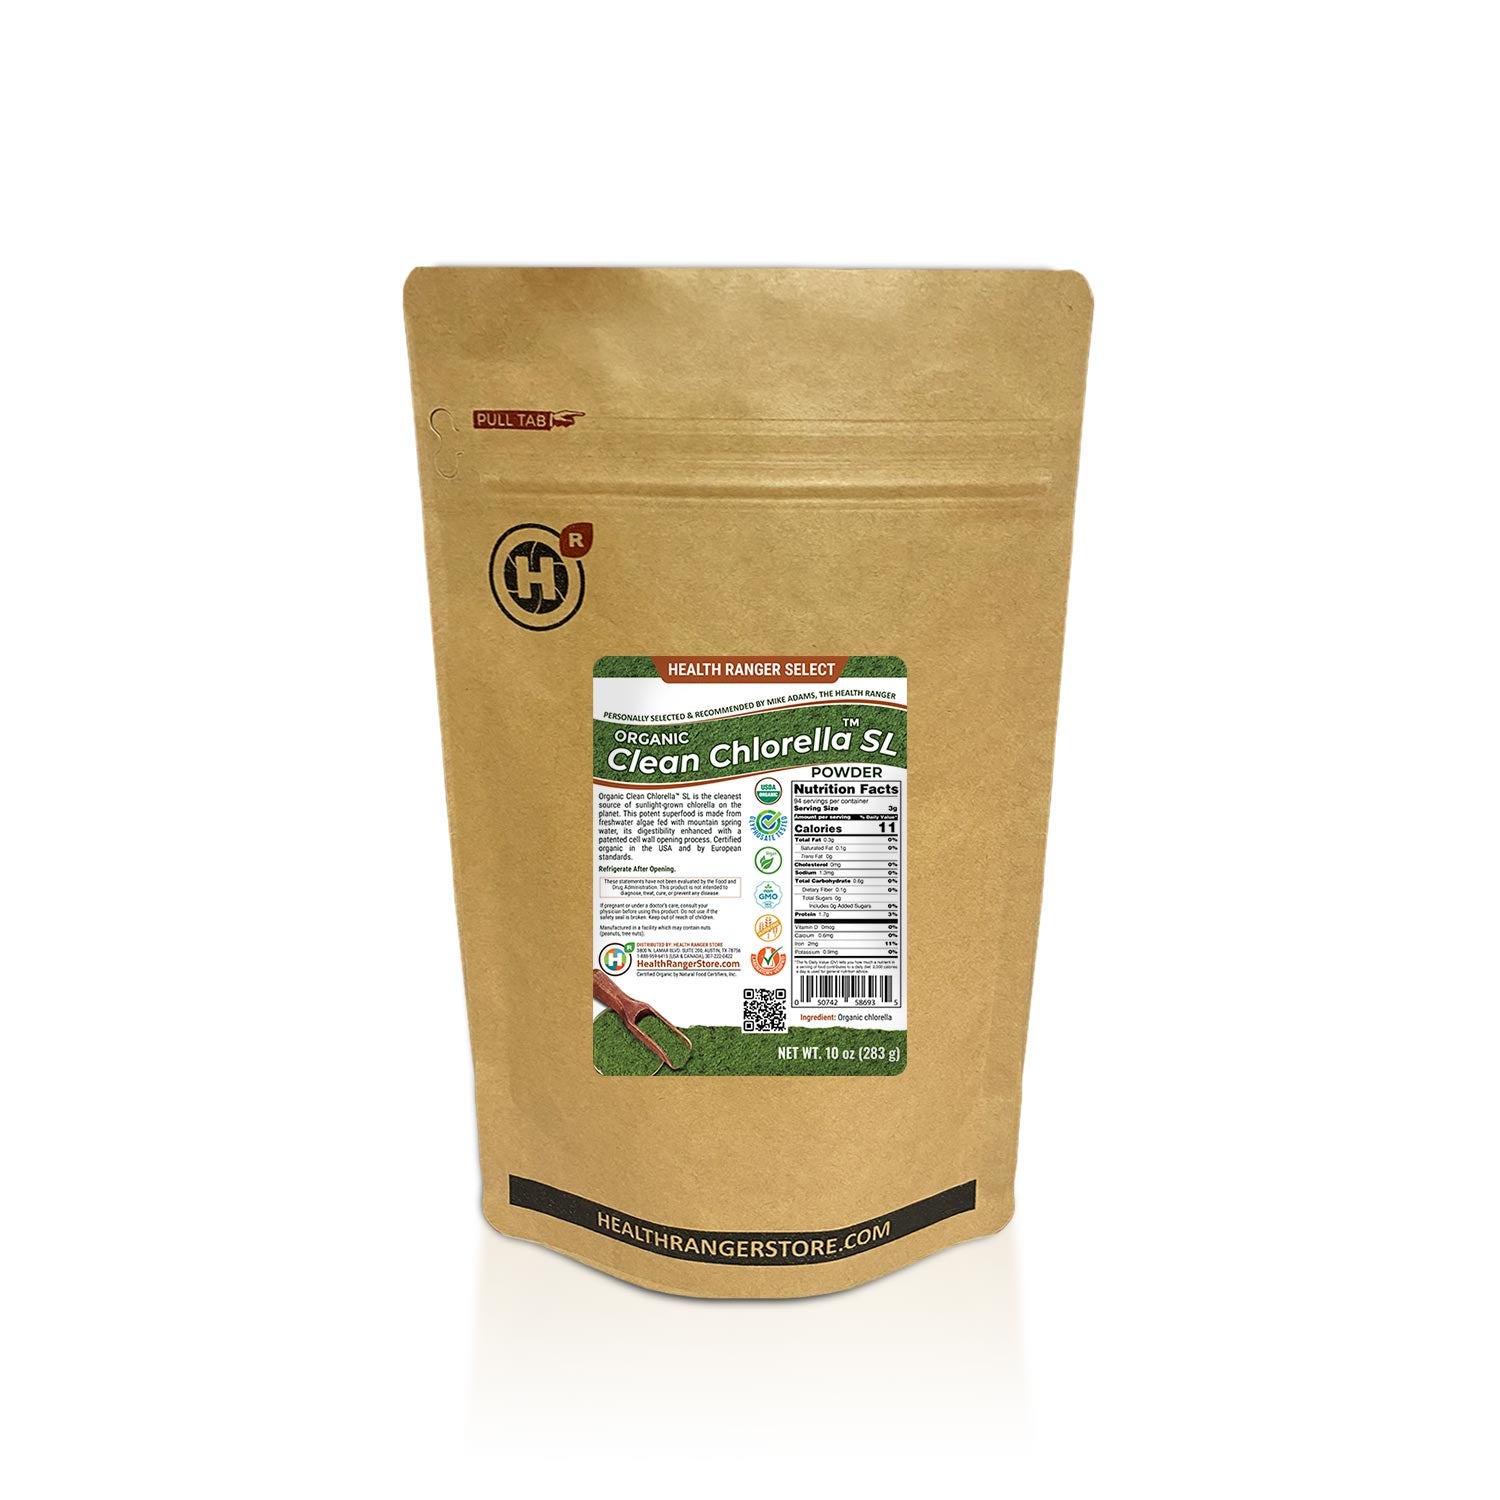 Organic Clean Chlorella SL Powder 10 oz (283g)